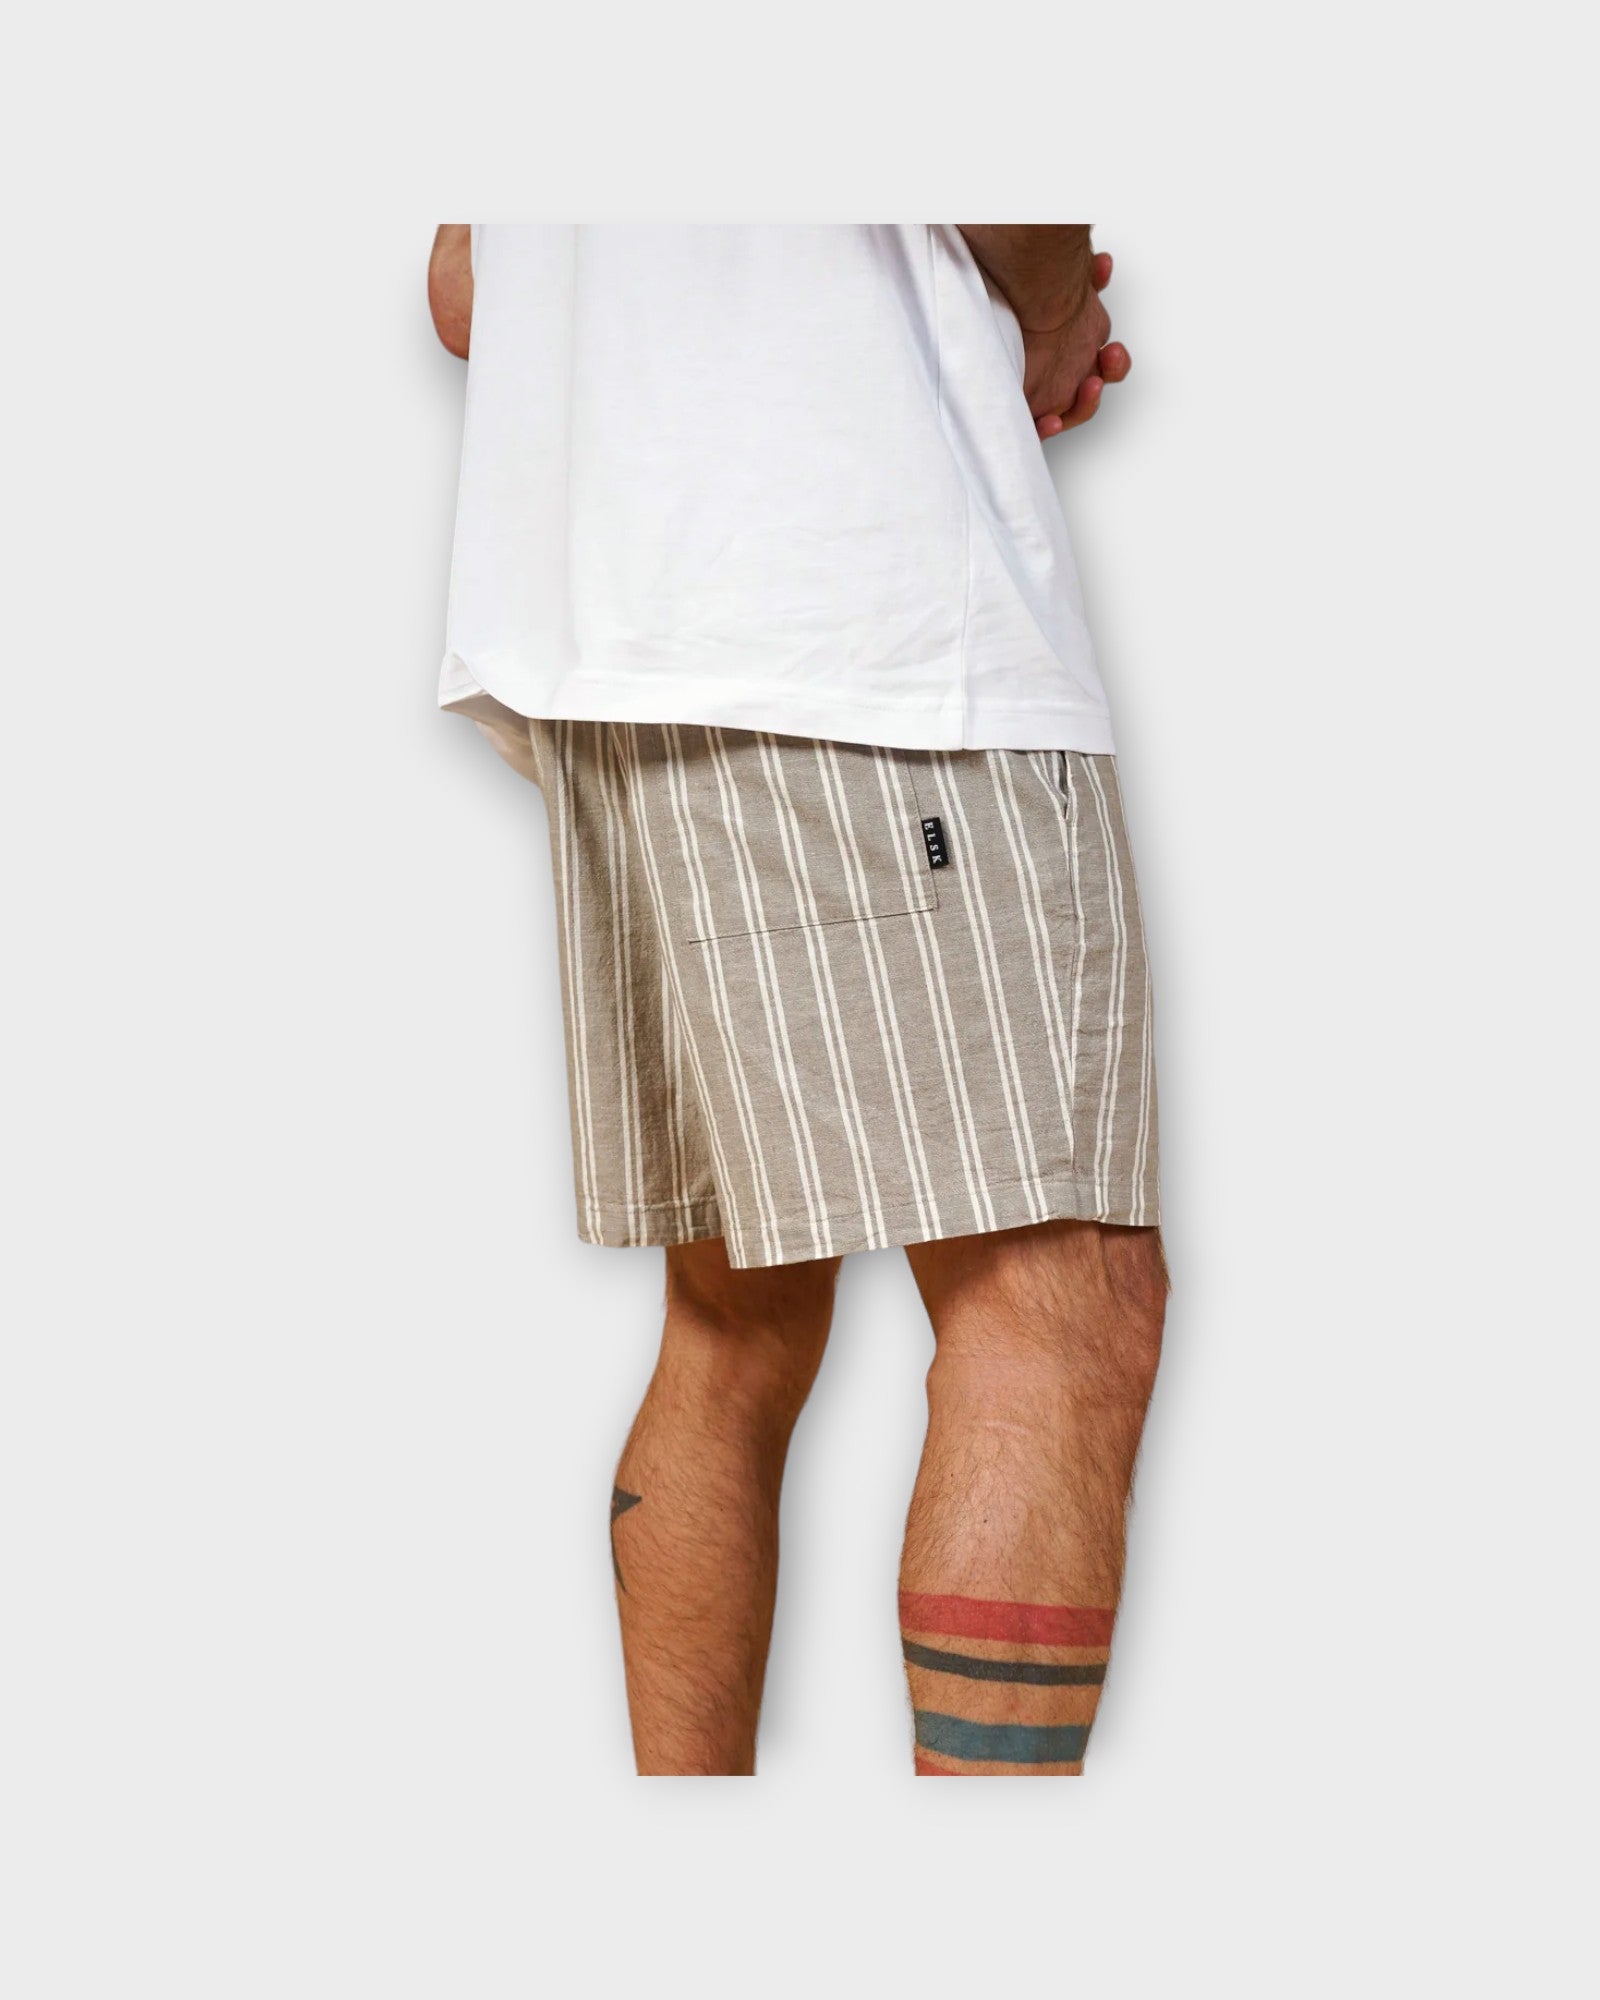 Wallie Drawstring Stripe Shorts Almond Beige fra Elsk. Sandfarvet og hvid stribet Shorts til Mænd. Her set bagfra.